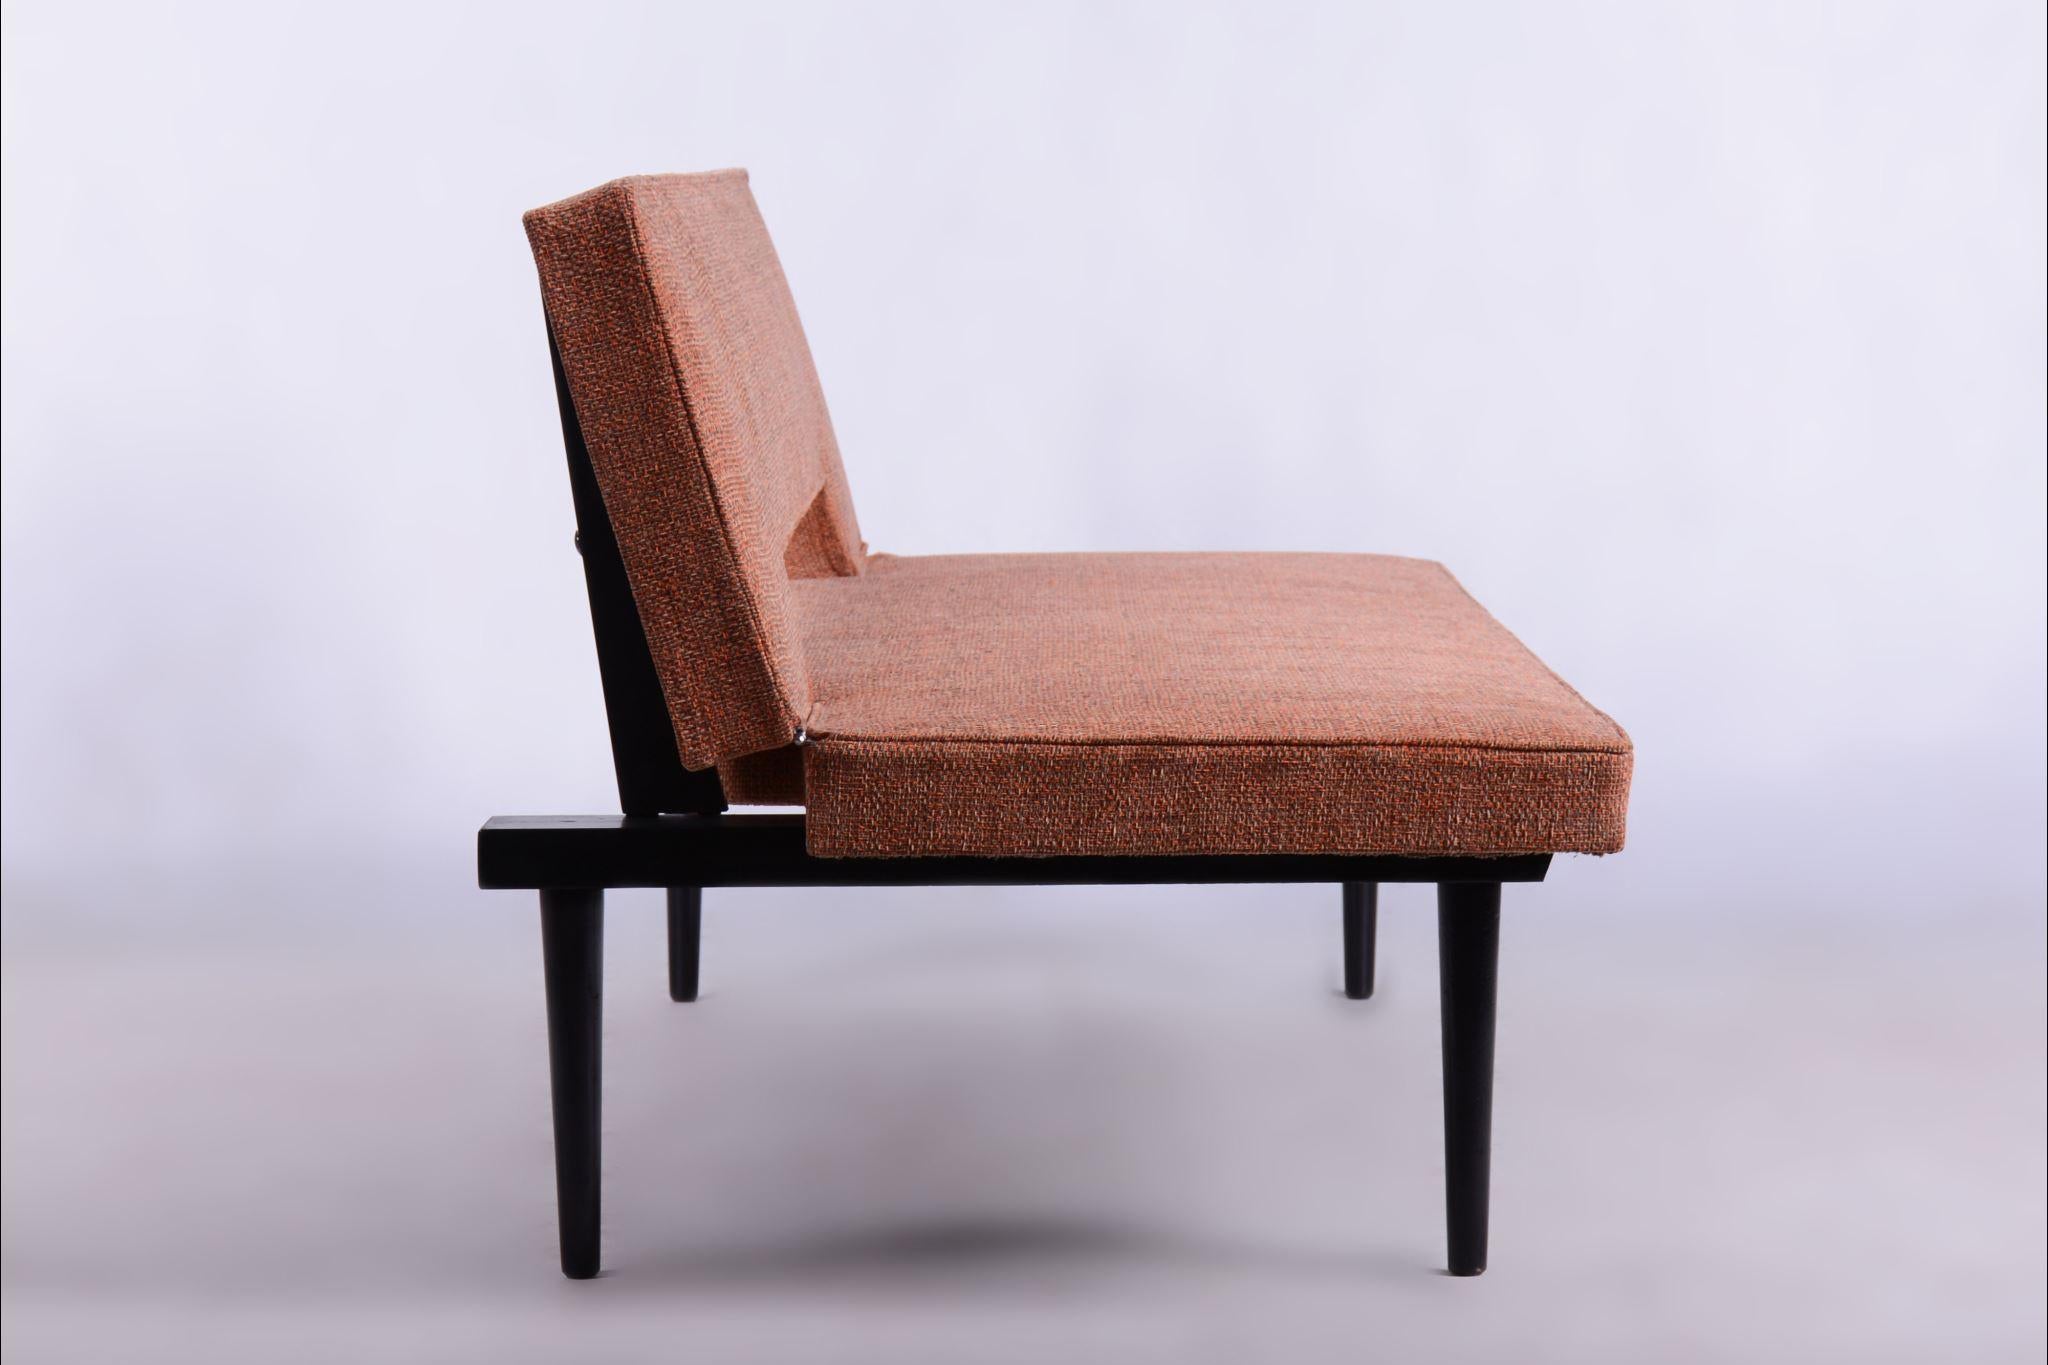 Restored Midcentury Sofa, Miroslav Navratil, Lacquered Wood, Czechia, 1960s For Sale 1